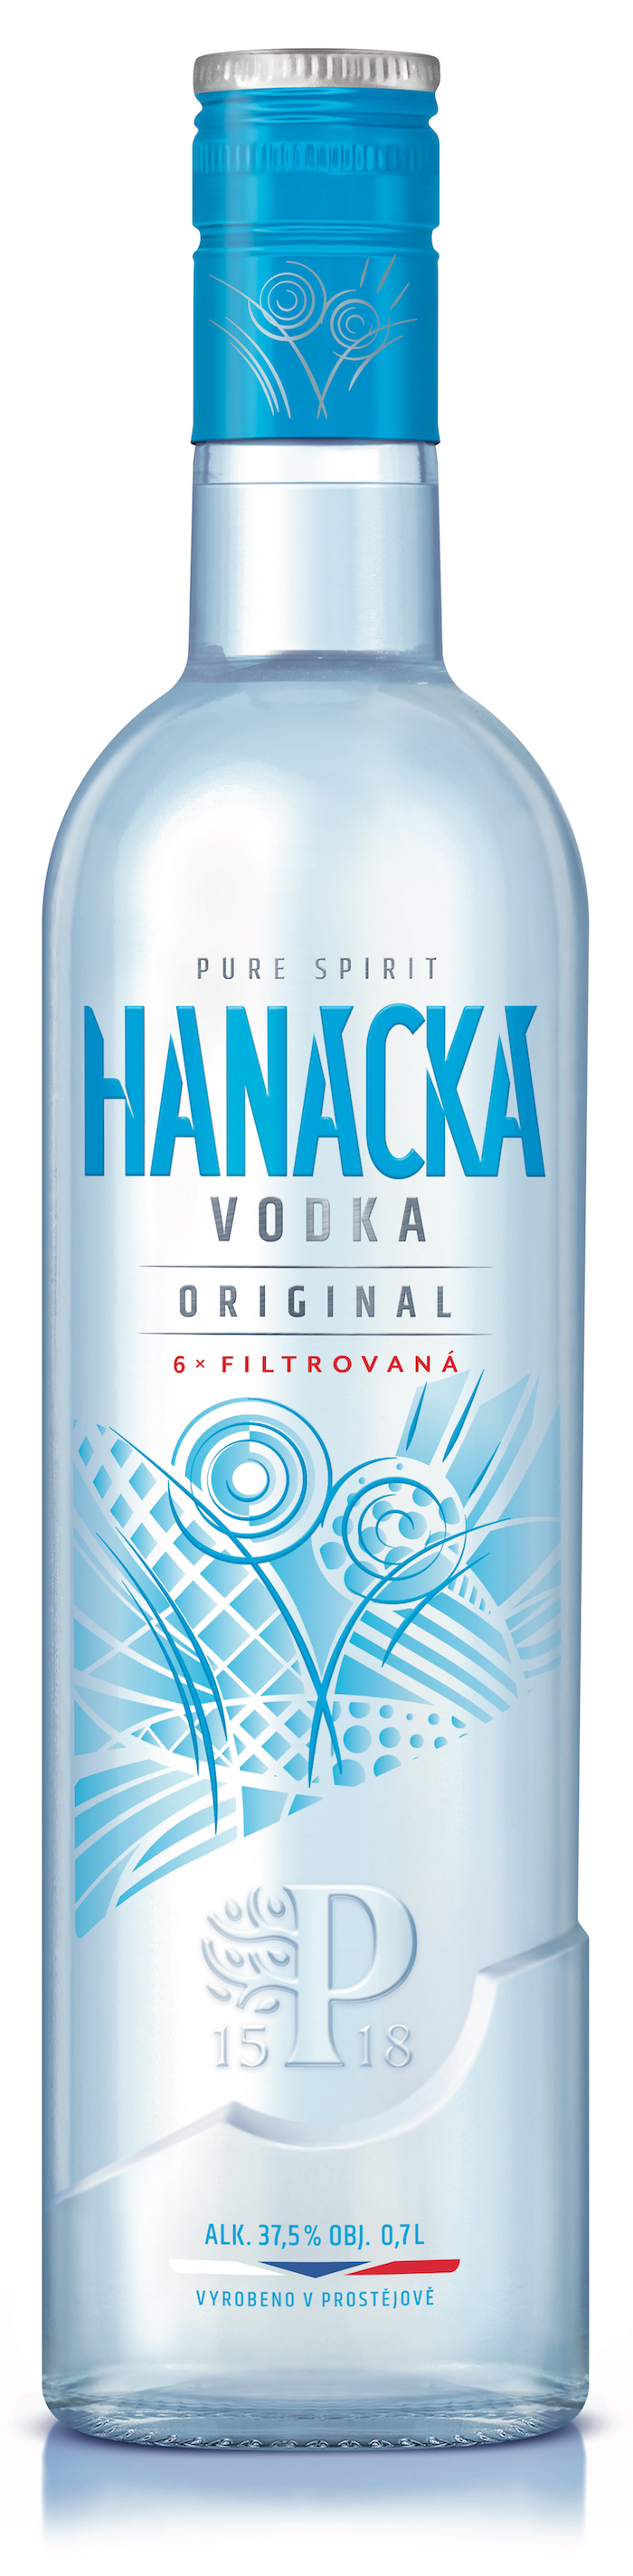 Hanácká vodka bude k dostání nově v kulaté lahvi, zdroj: Palírna U Zeleného stromu